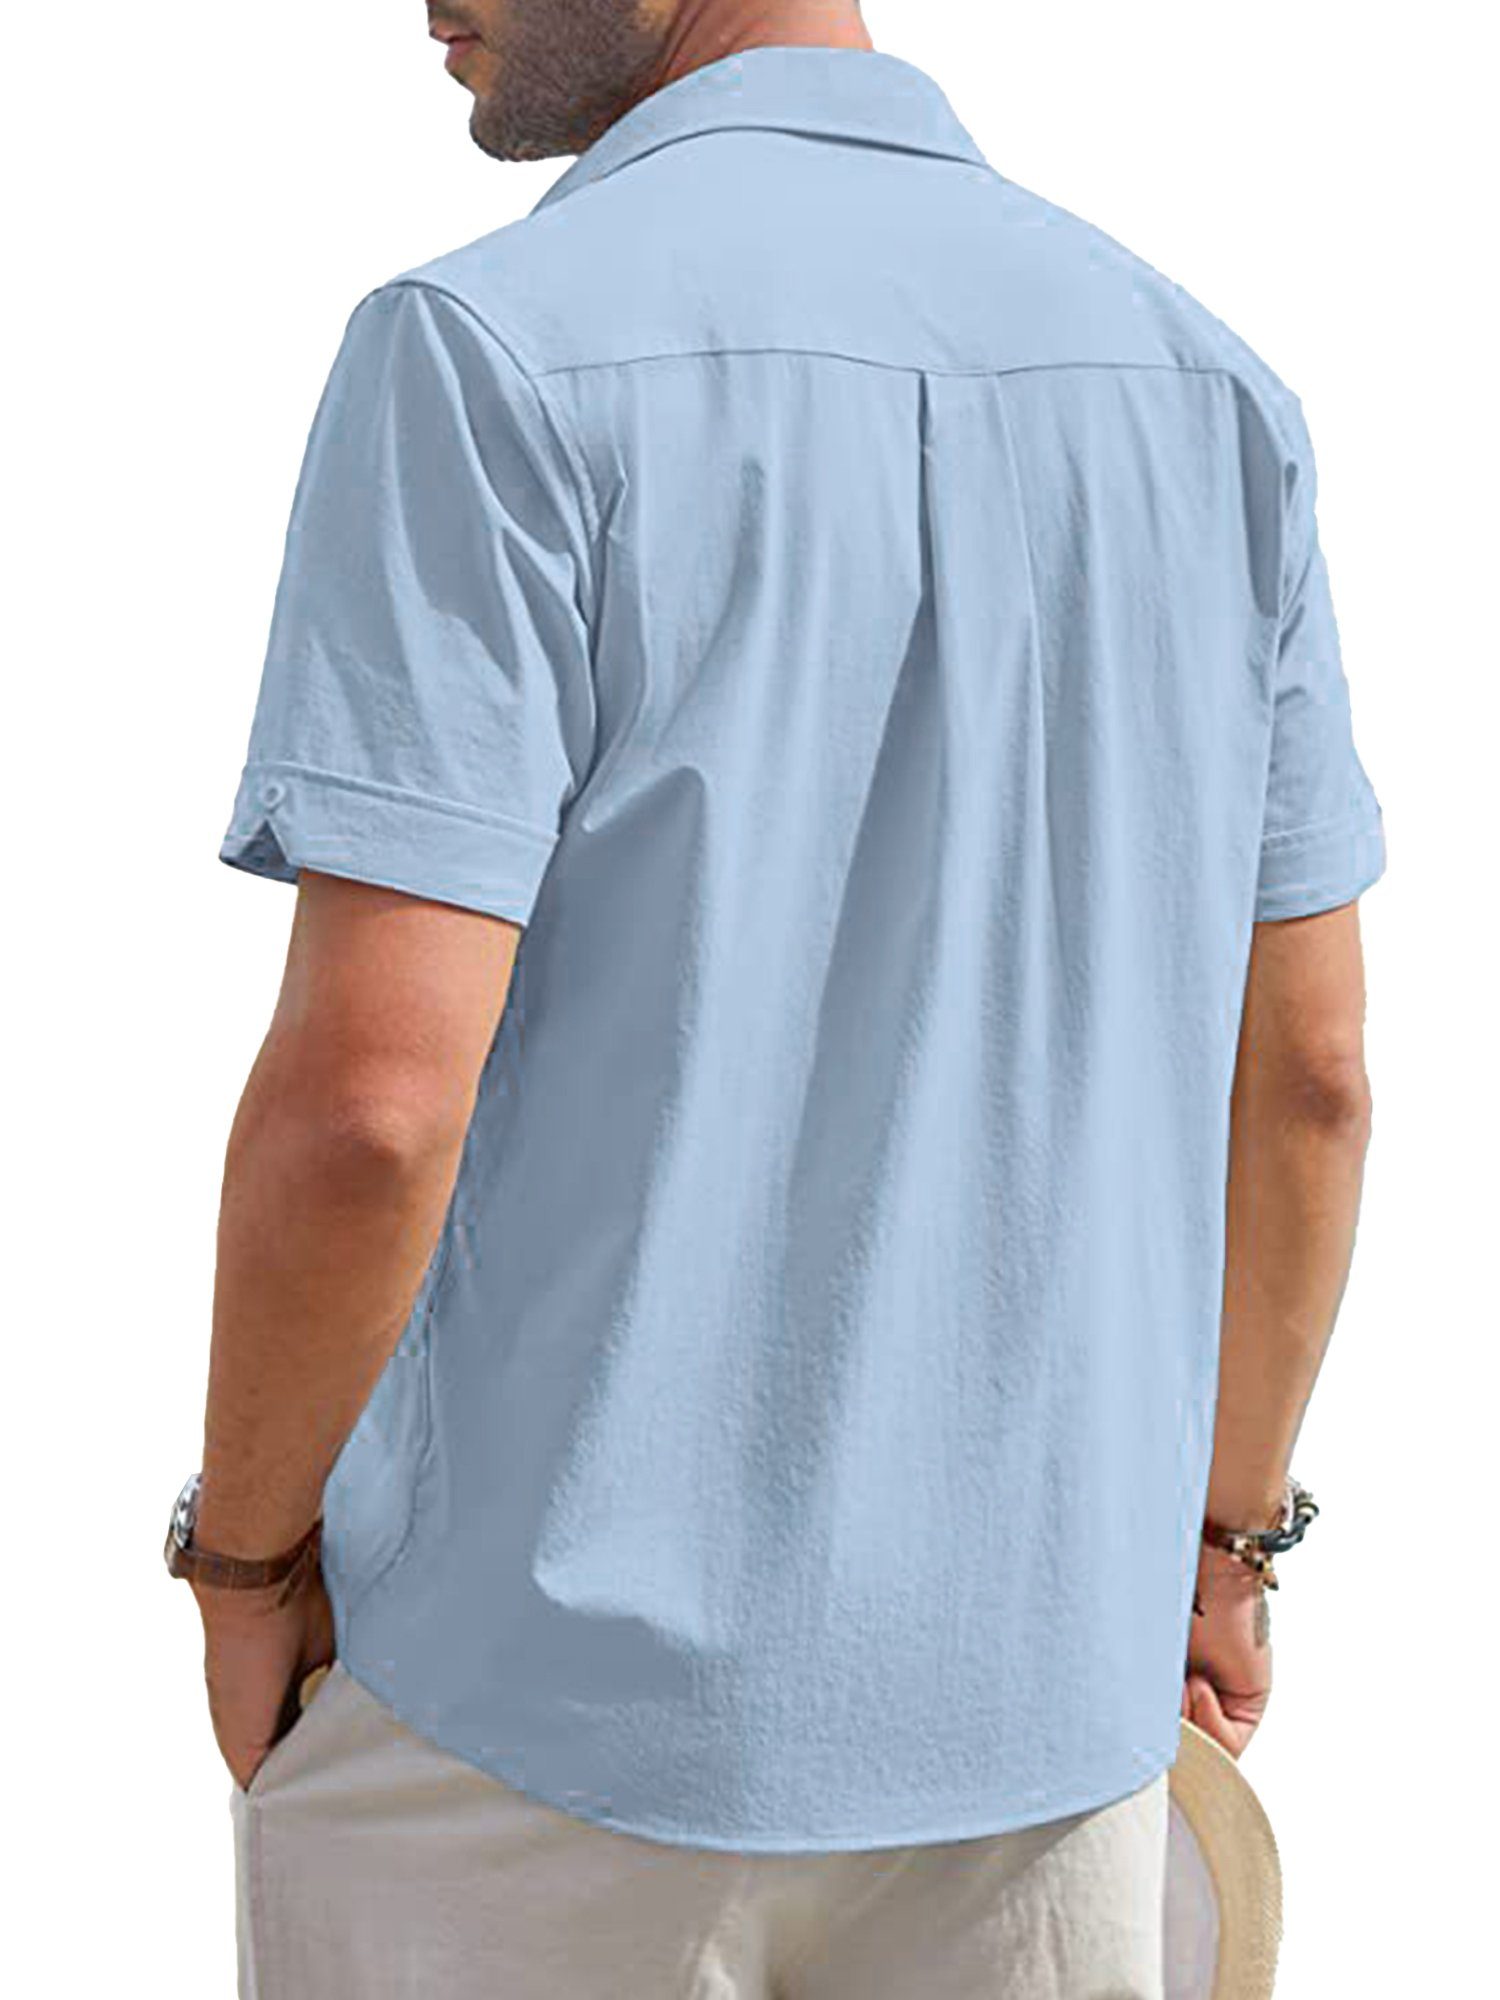 mit Herren Kurzarm Streifen Blusenshirt 42-52Größe LAPAPRO Blusenshirts